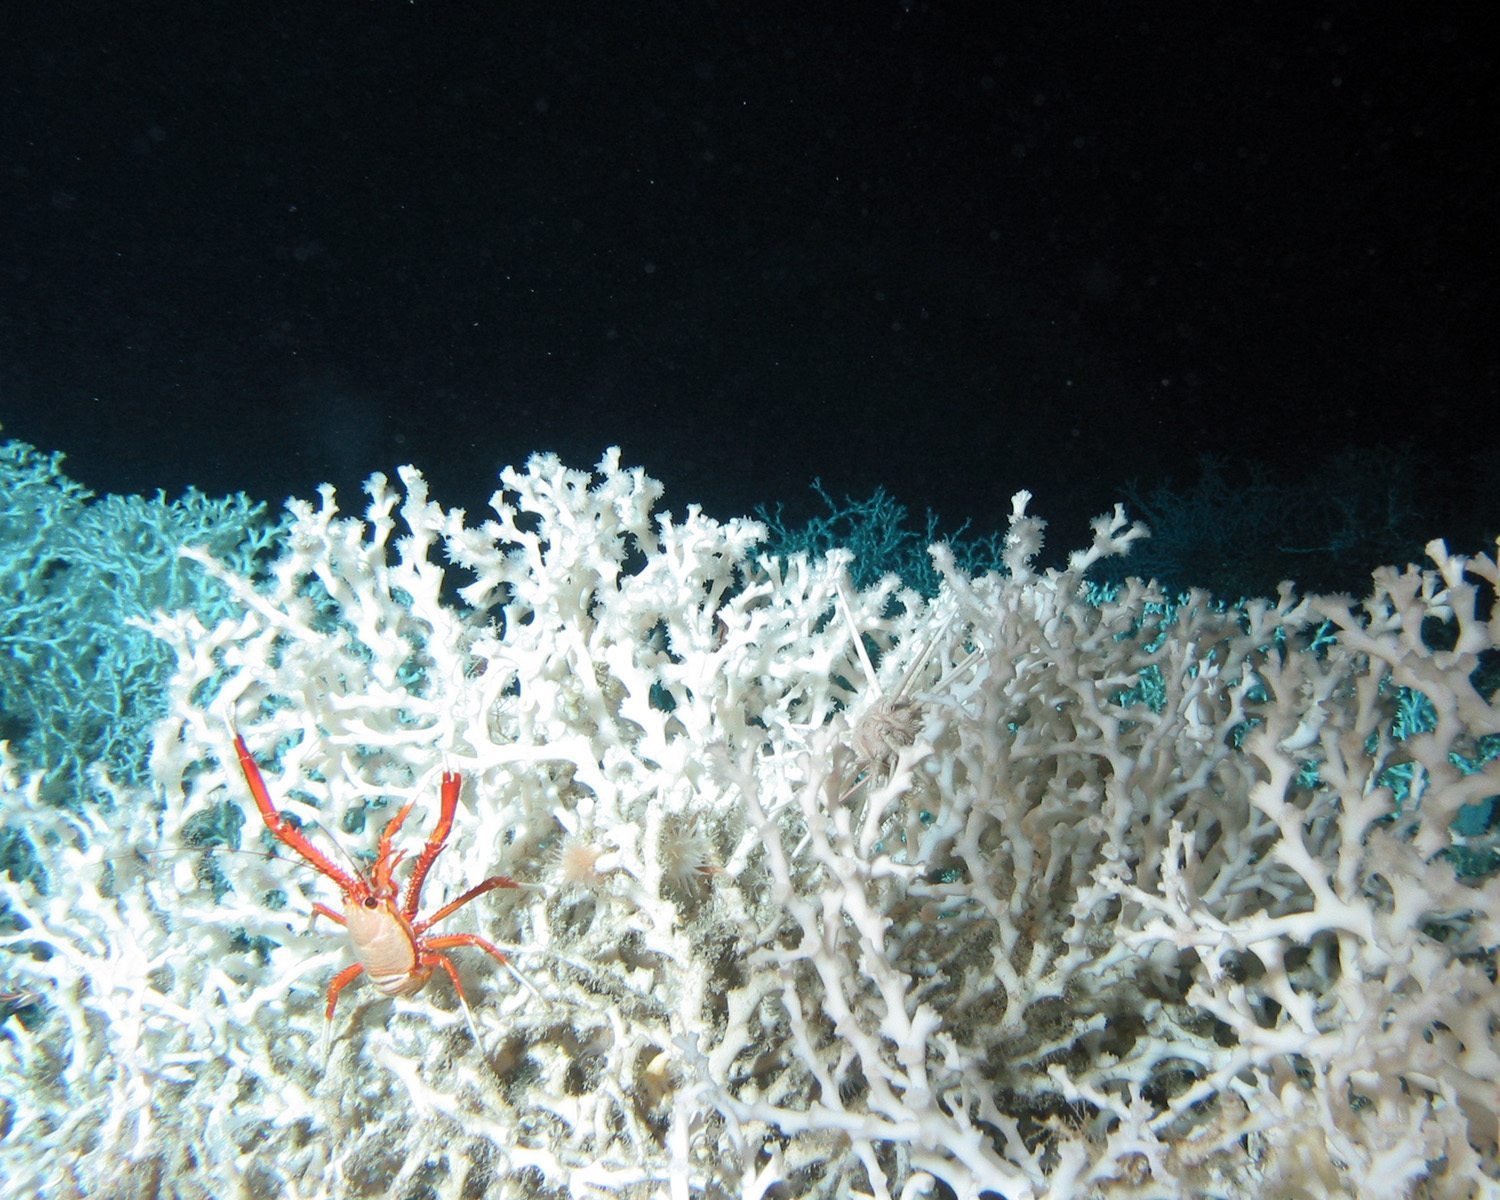 Crab (Eumunida Picta) in thickets of the Deep Sea coral species Lophelia Pertusa. Copyright: "Brook at. al, NOAA OE 2005 / Marine Photobank